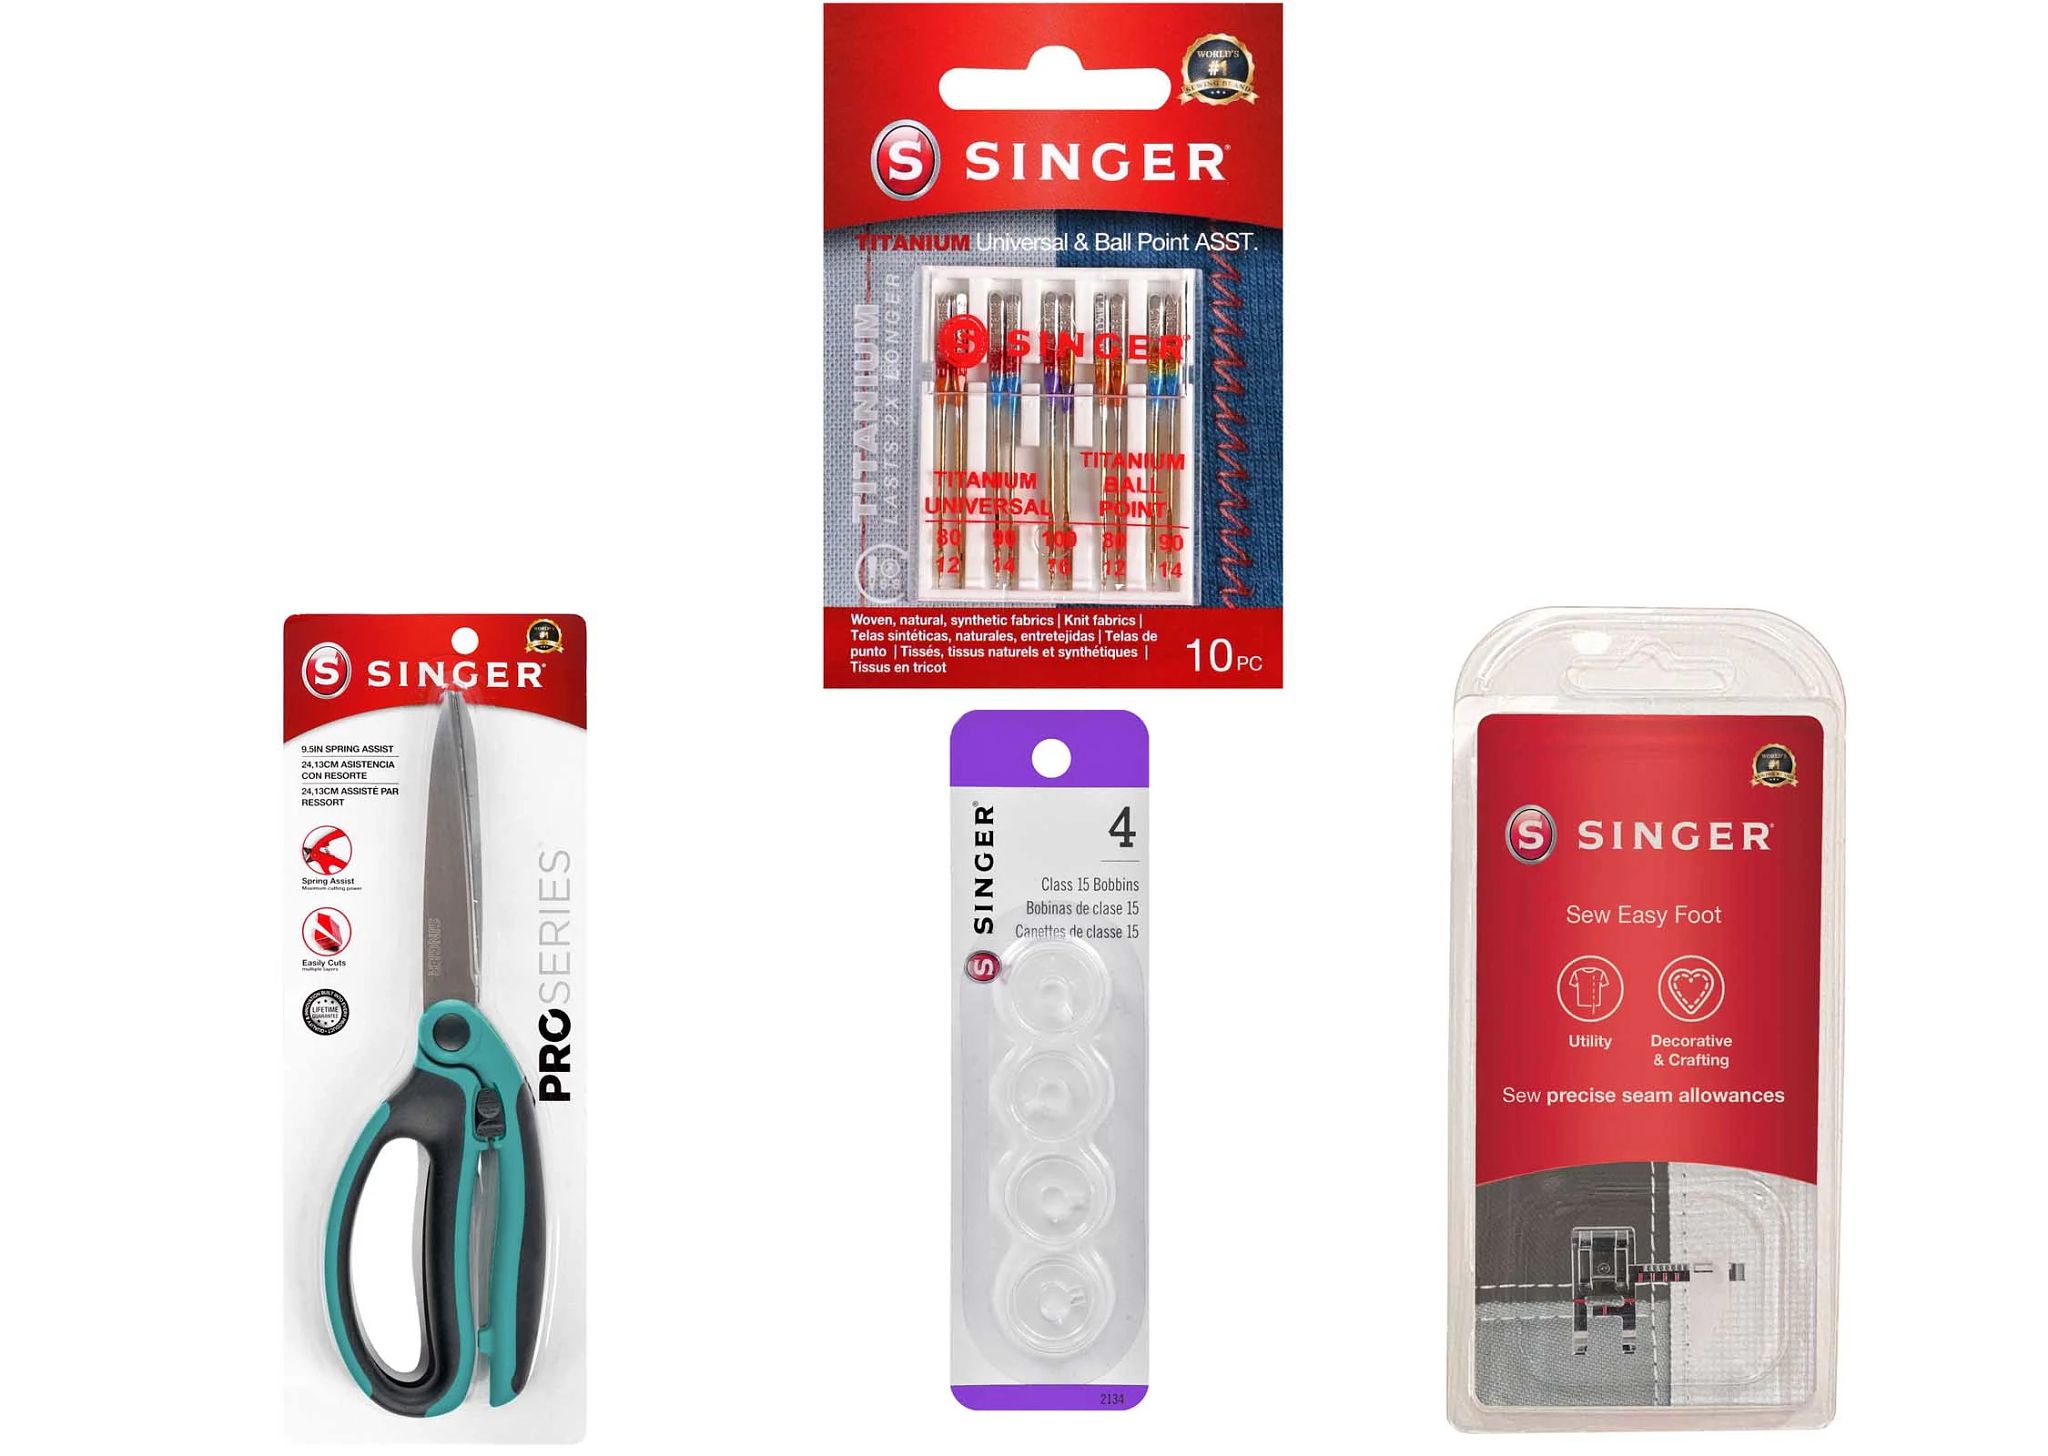 Singer Sewing Machine Essentials Kit